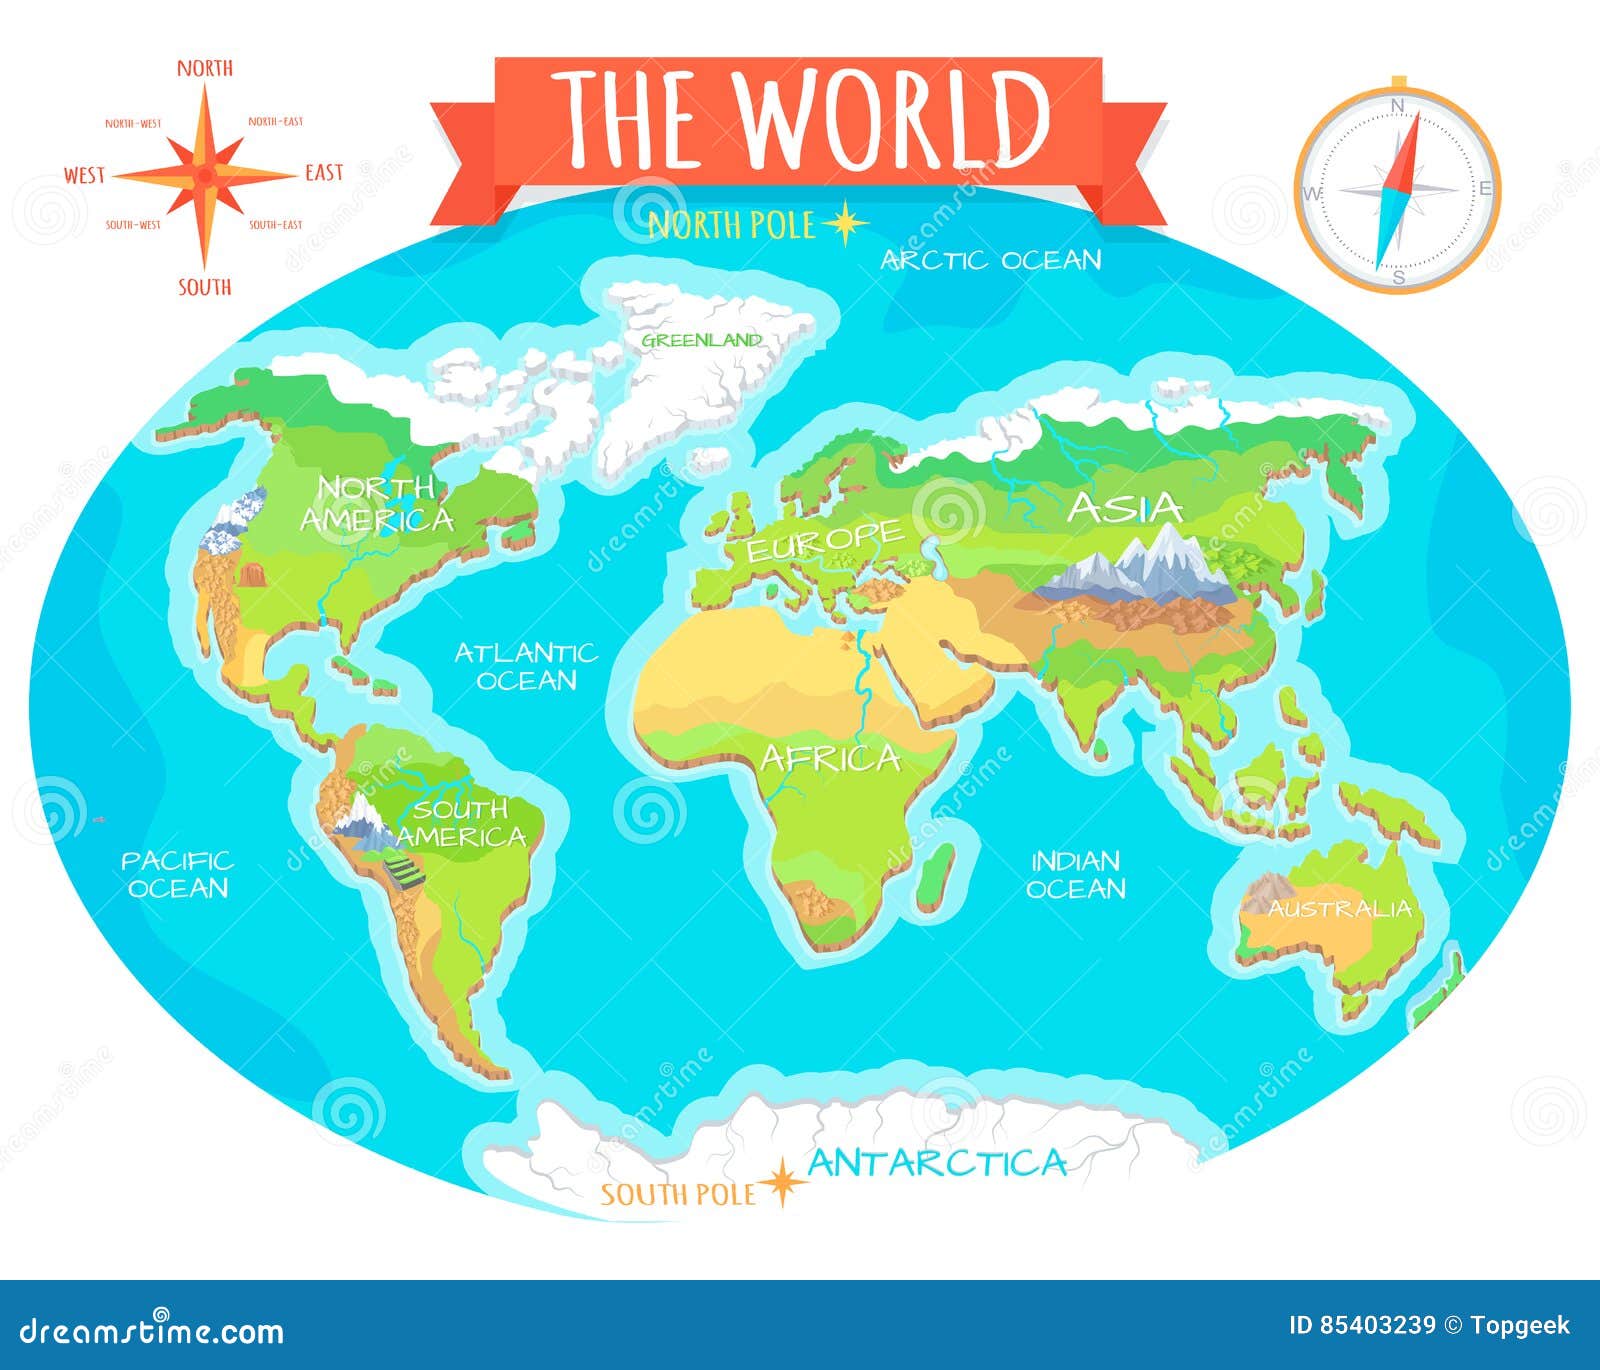 Карта материков с островами. Континенты для дошкольников. Карта с материками для детей. Изображения материков для детей. Карта континентов.